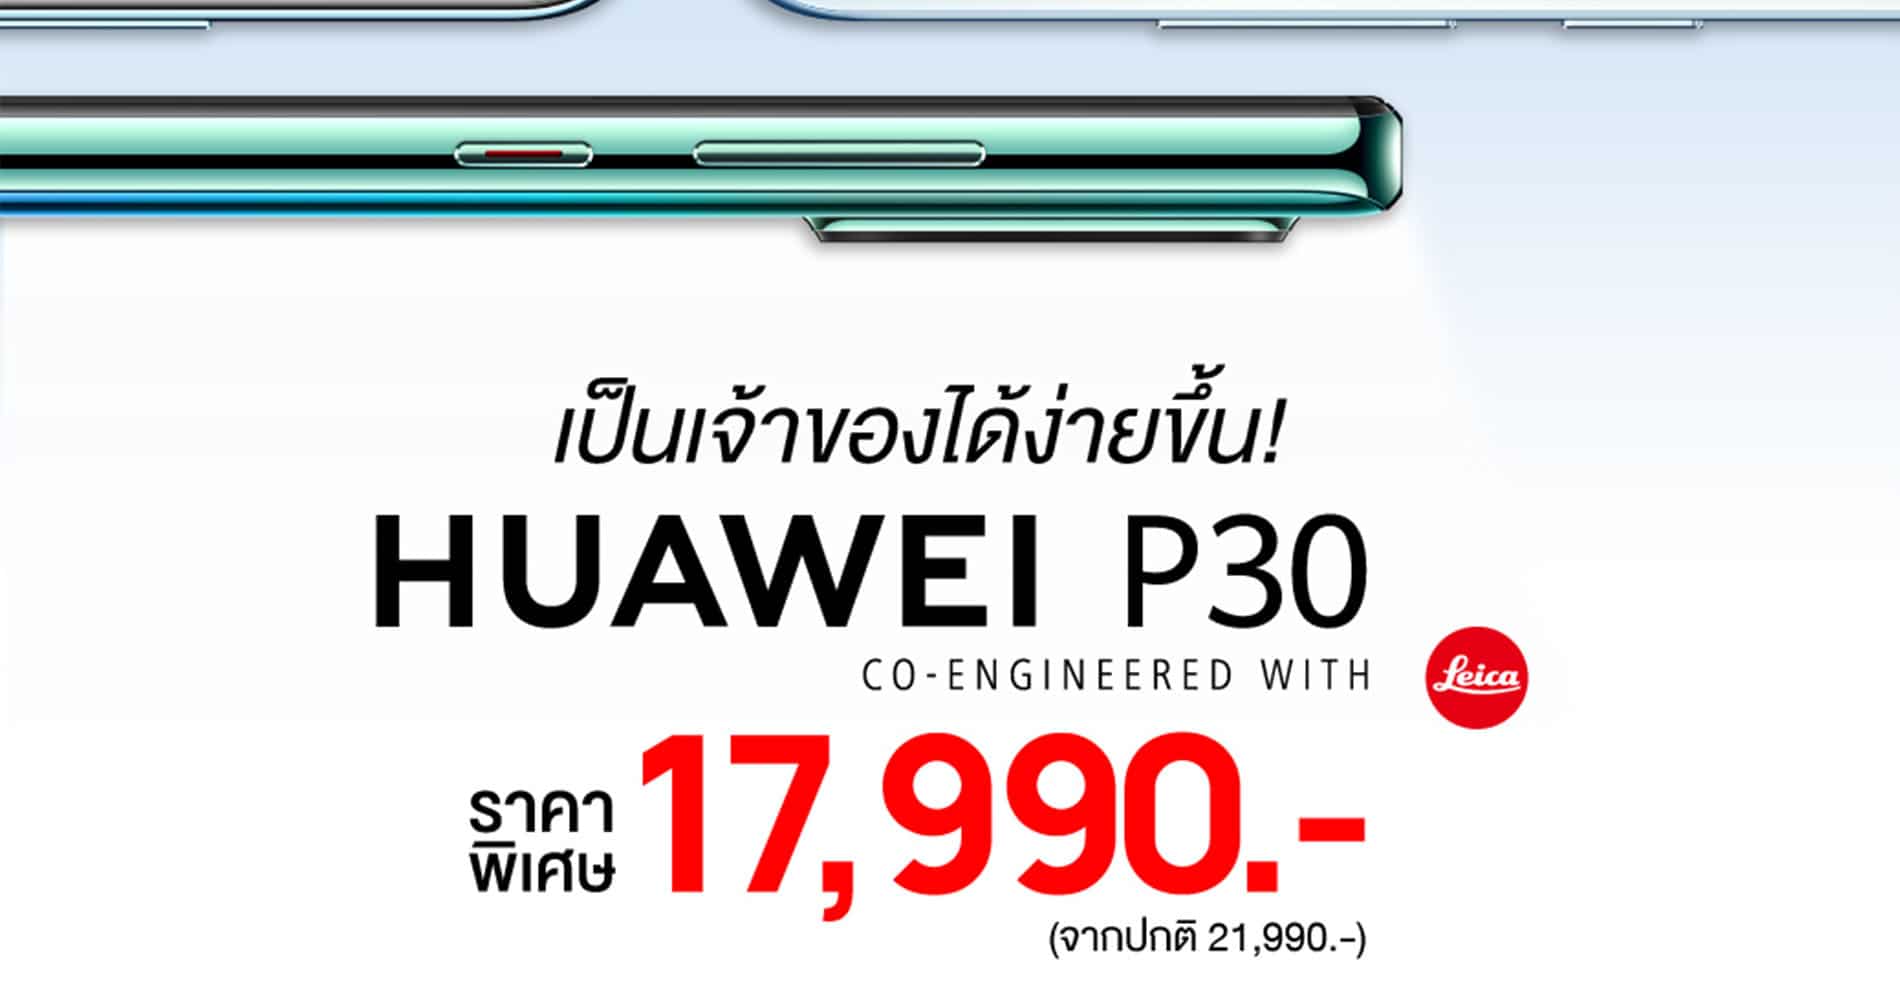 Huawei P30 สมาร์ทโฟนแฟลกชิฟกล้องเทพในราคาใหม่ให้คุณเป็นเจ้าของได้ง่ายขึ้น เหลือเพียง 17,990 บาท! 19